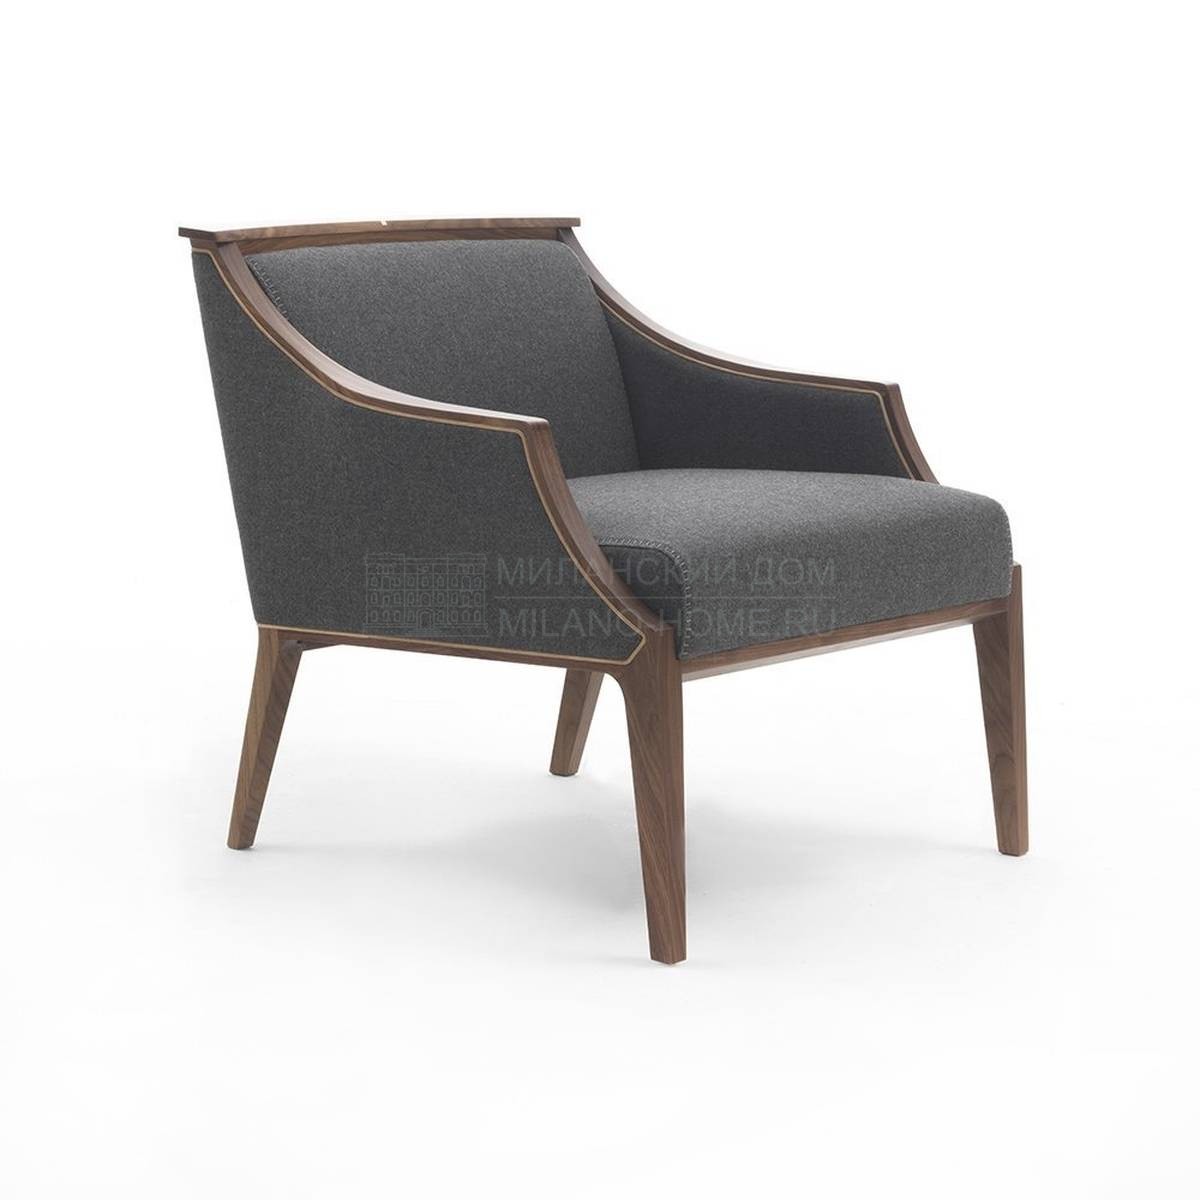 Кресло Liala armchair из Италии фабрики PORADA